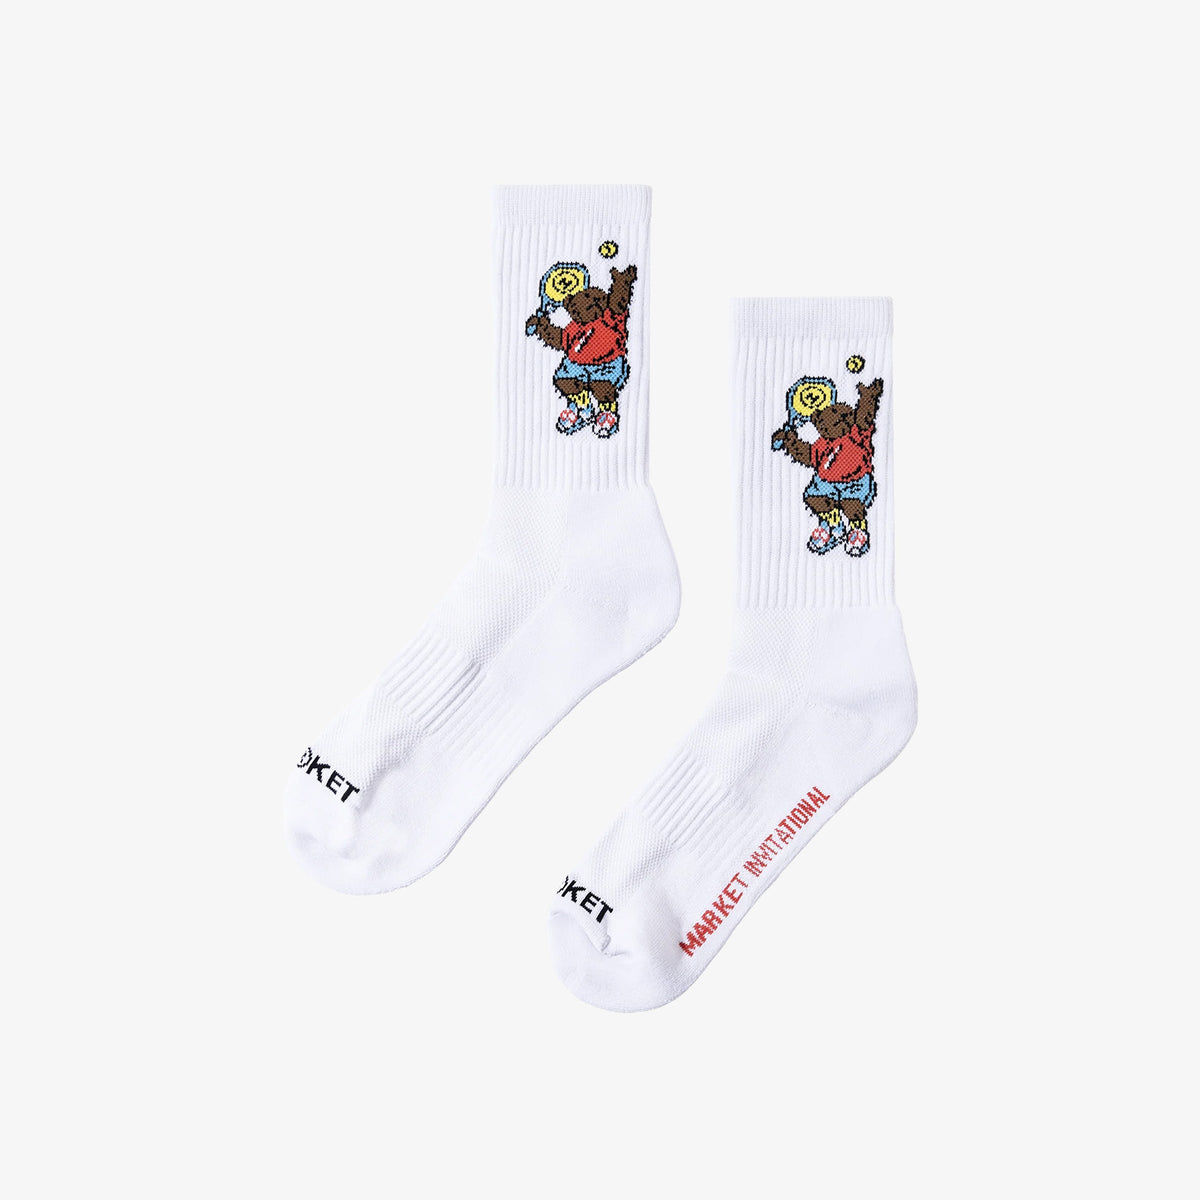 Invitational Socks - White